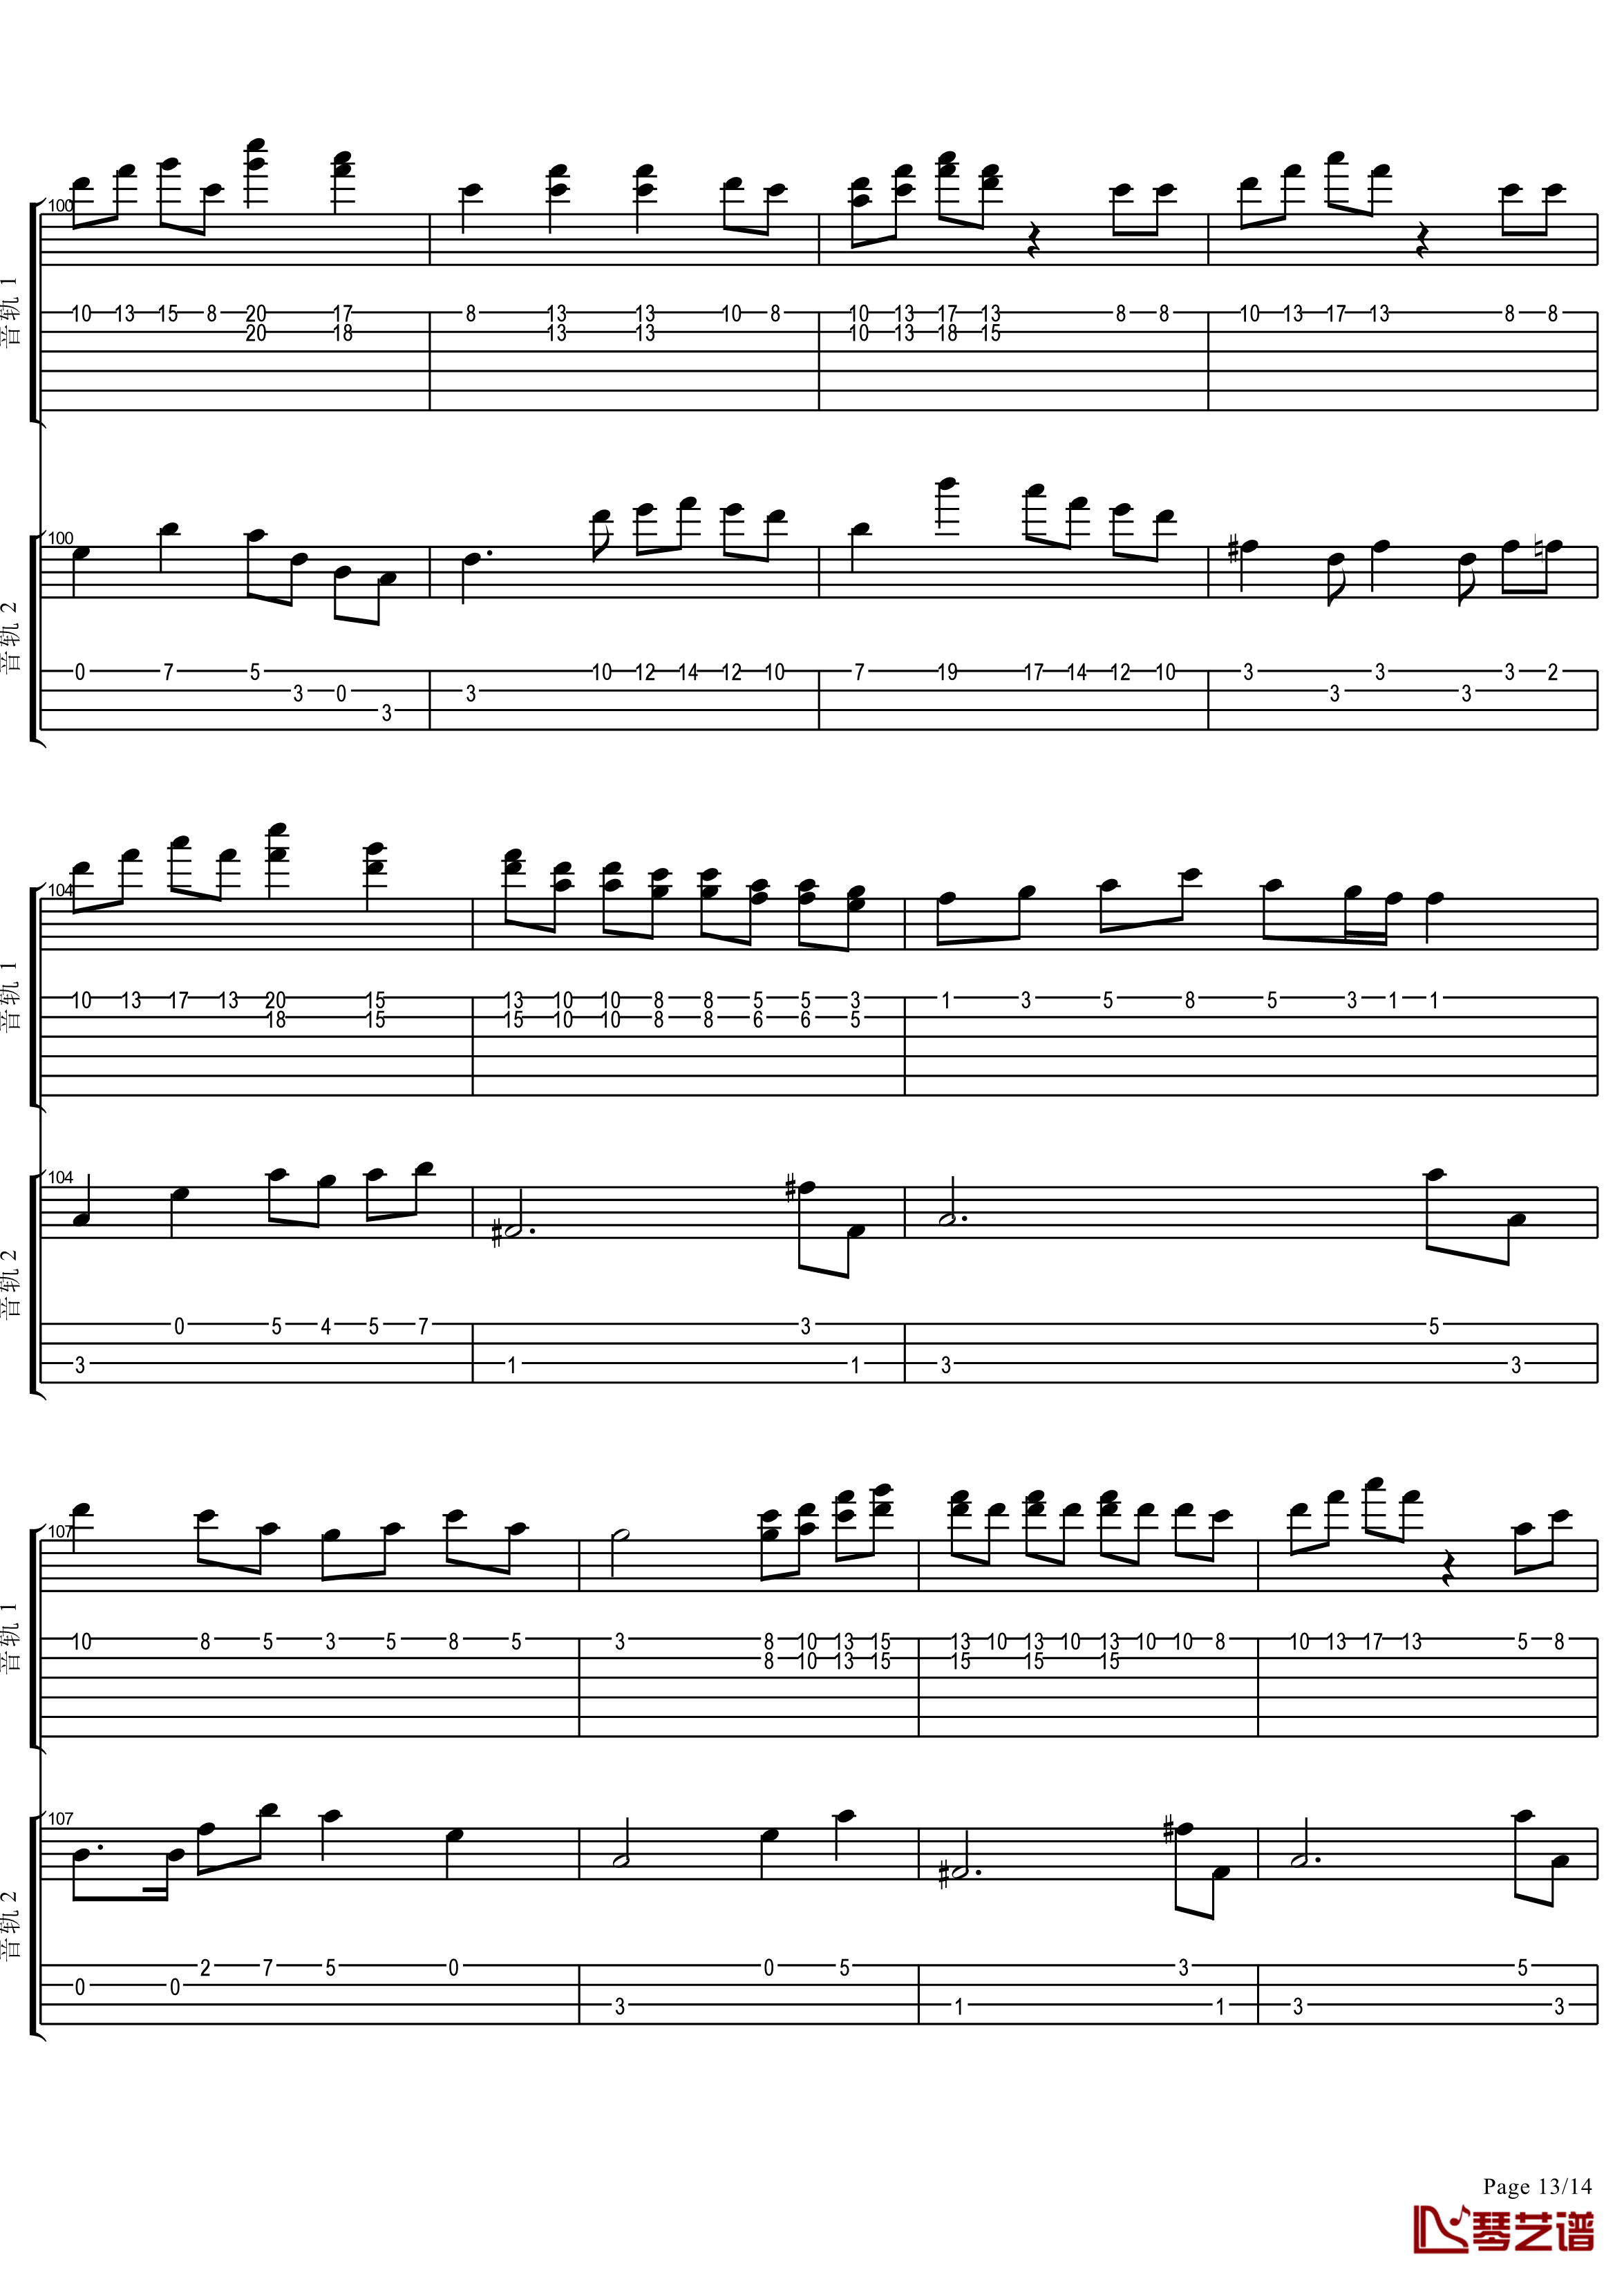 十八般武艺钢琴谱-完美演奏版-王力宏13